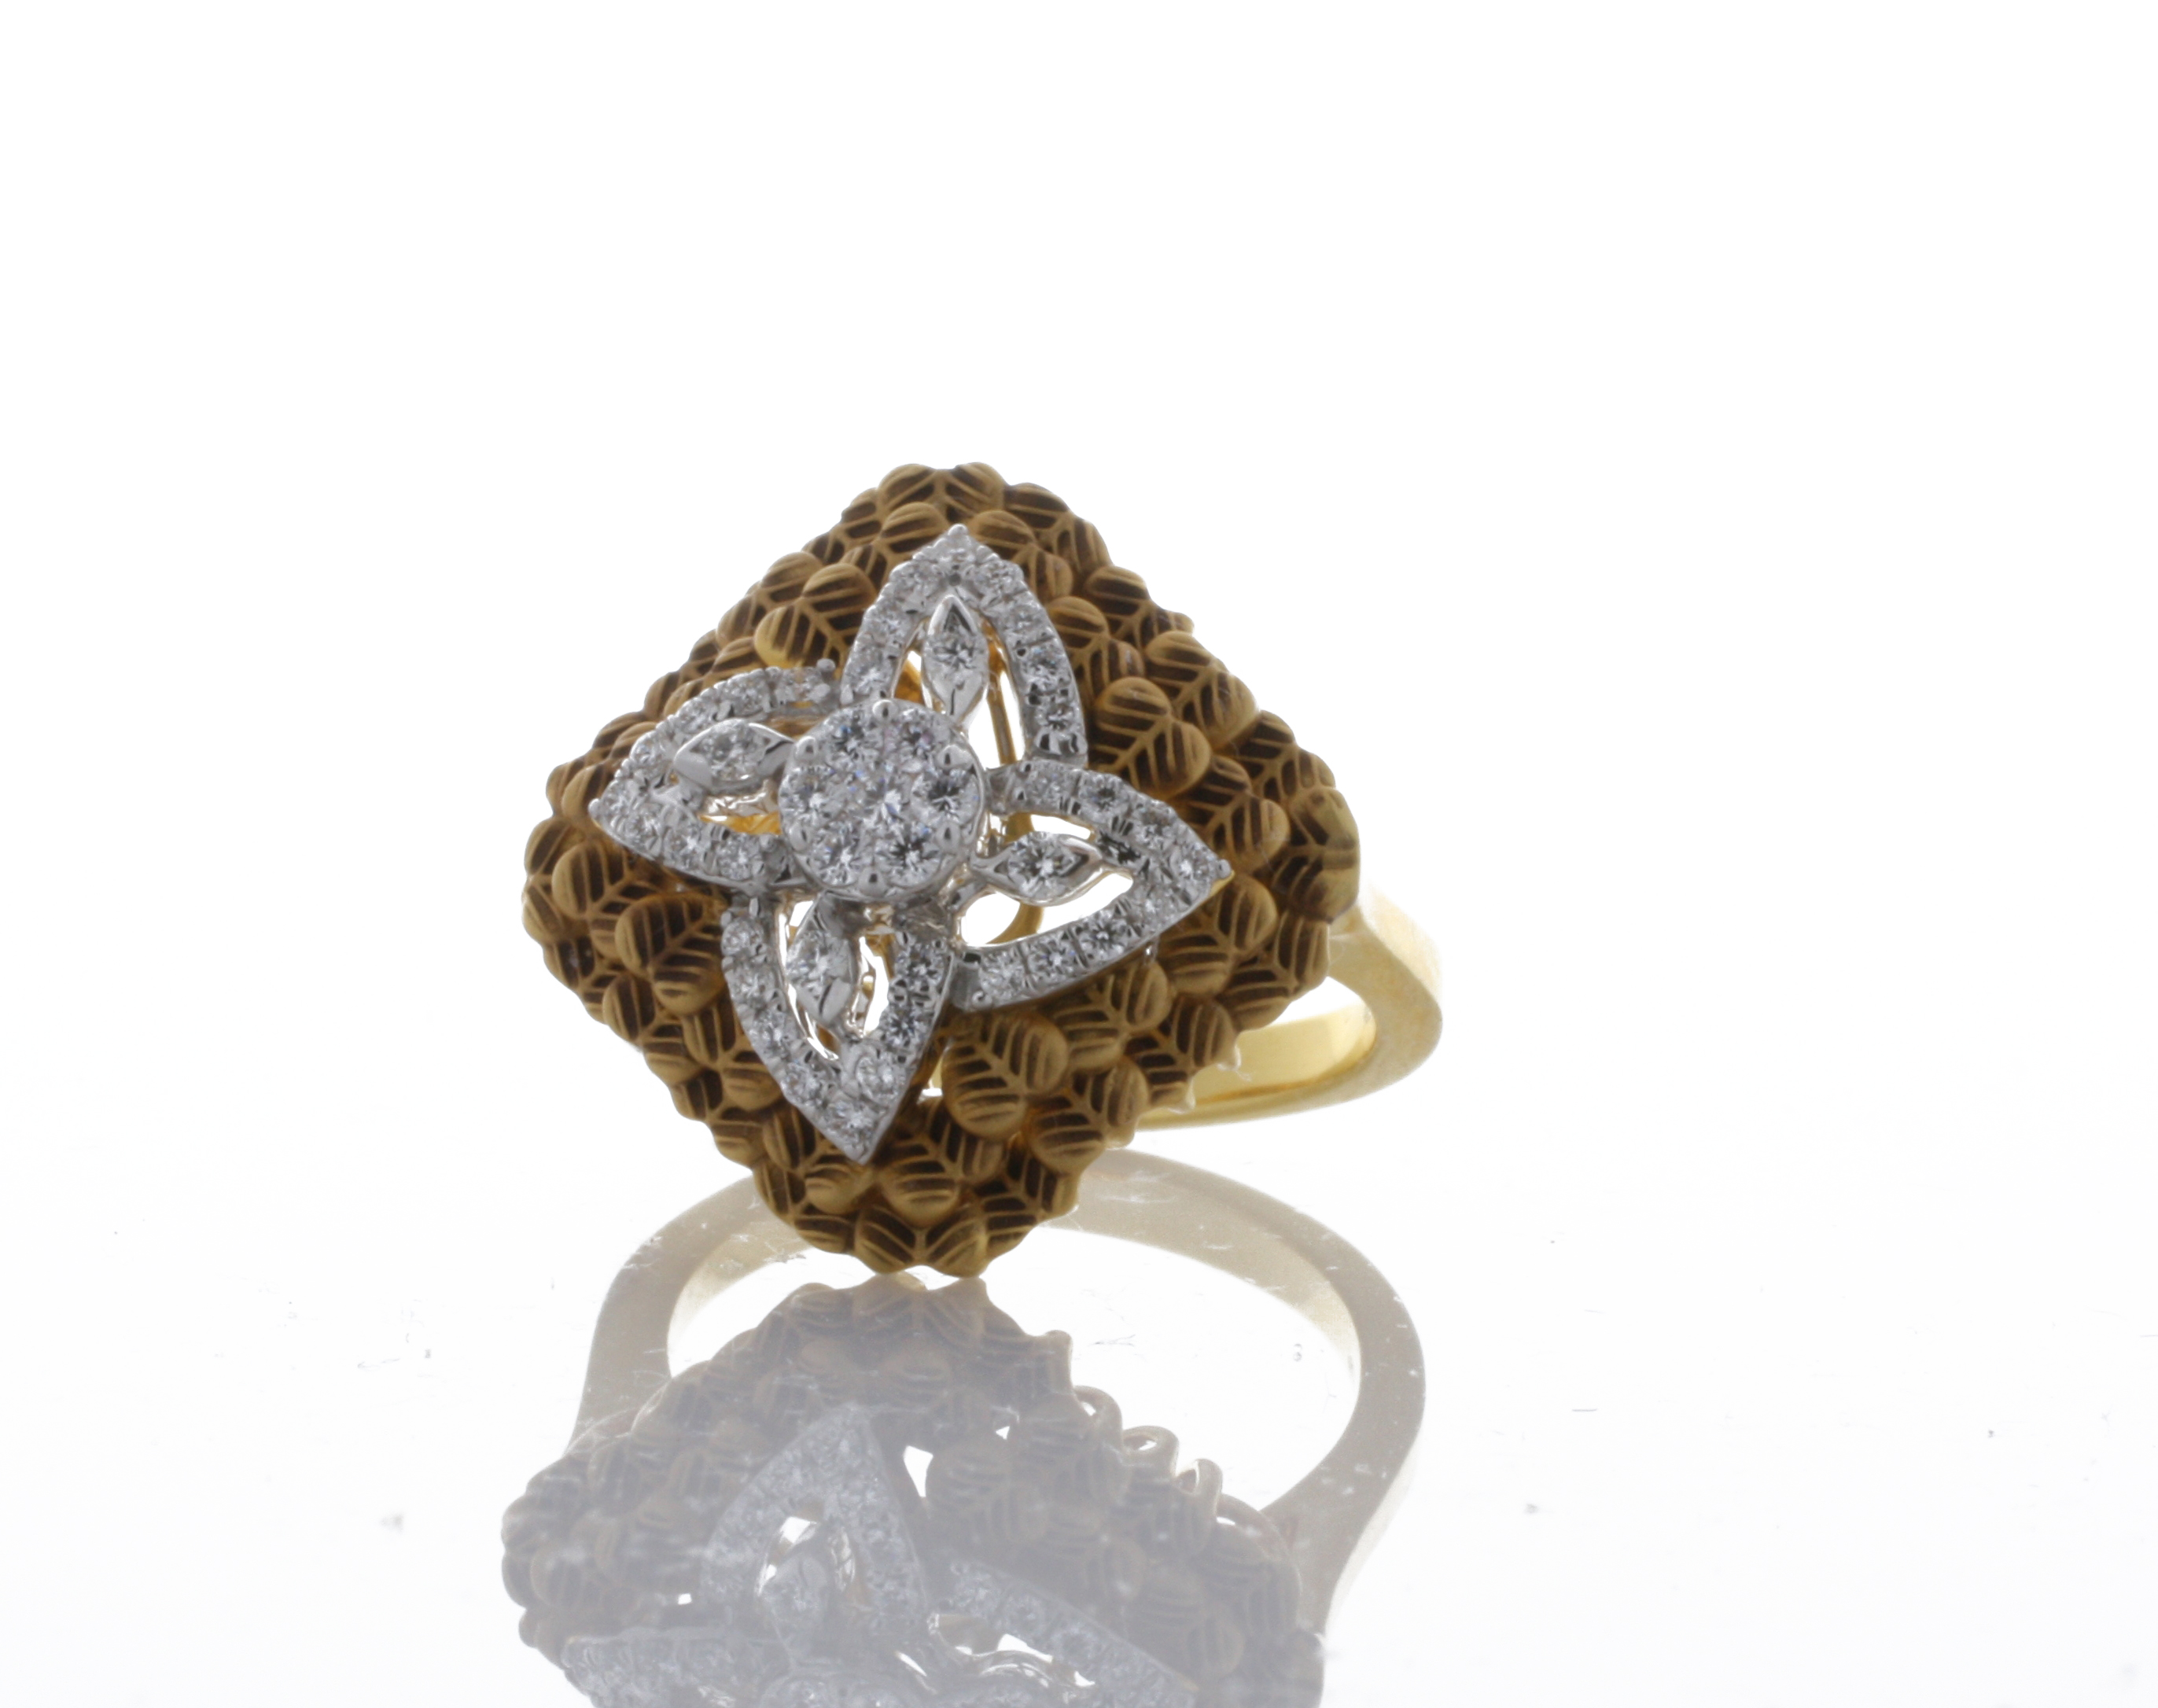 Harmony of Gold: Handmade 18K Yellow/White Gold Diamond Ring